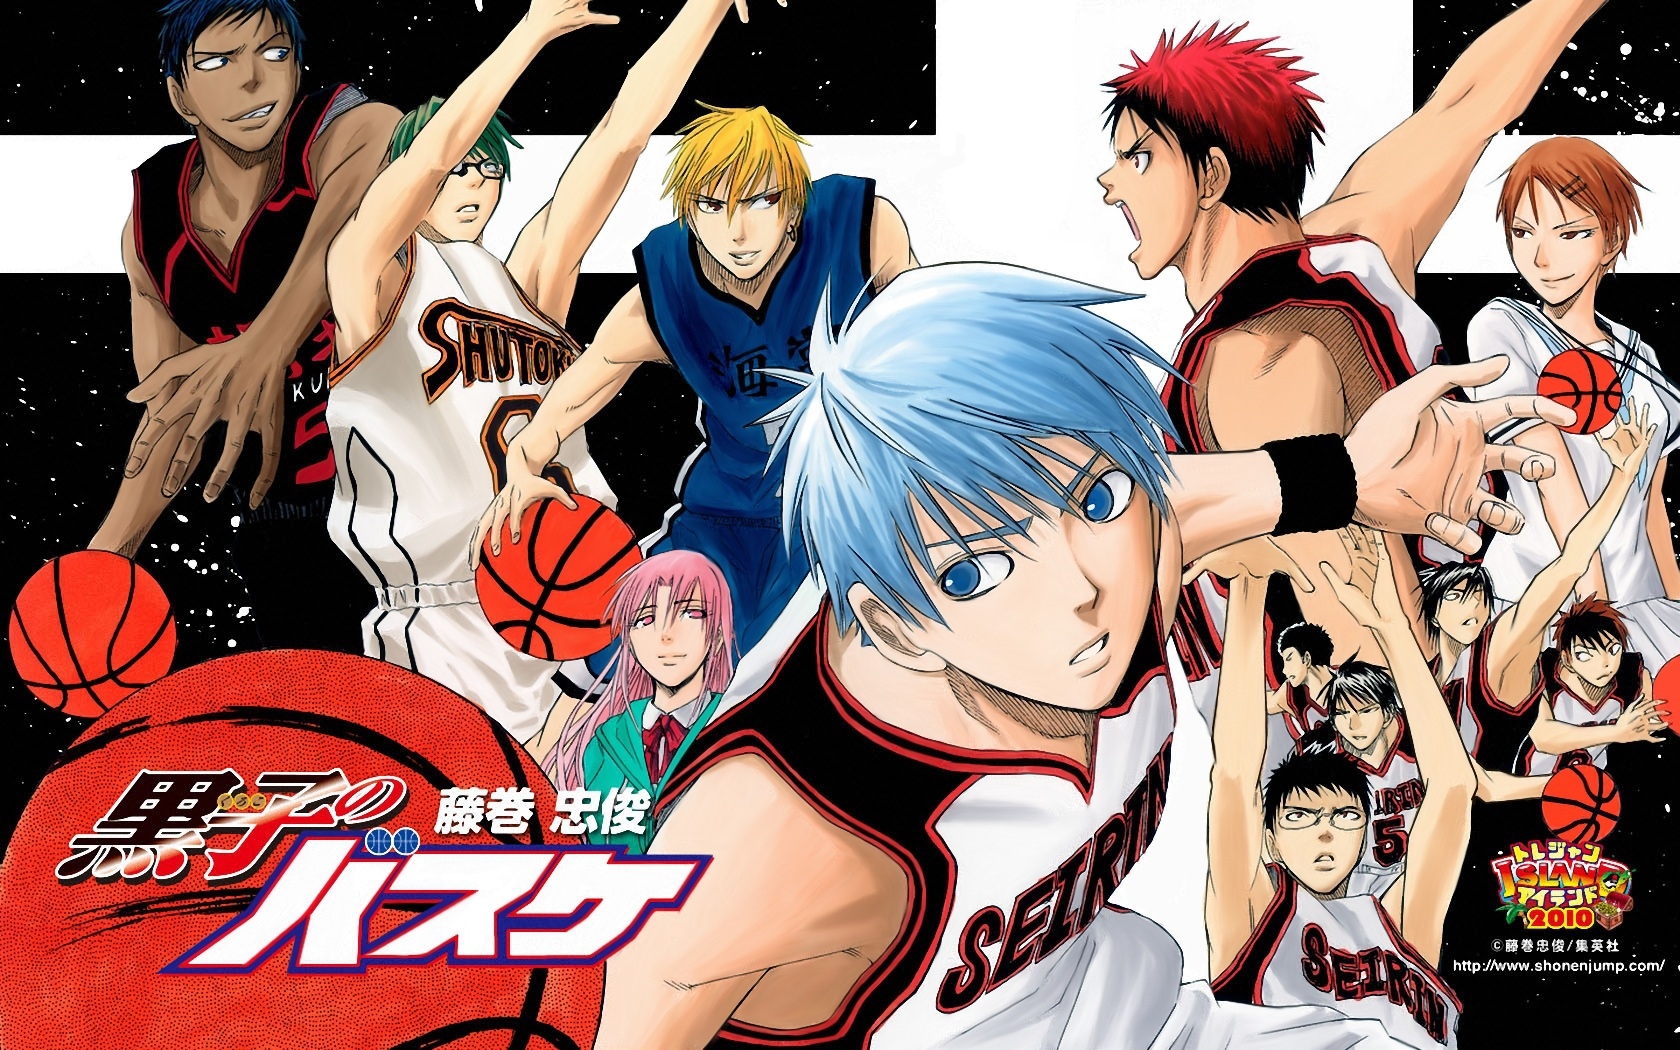 Várias imagens promocionais de Kuroko no Basket: Extra Game são